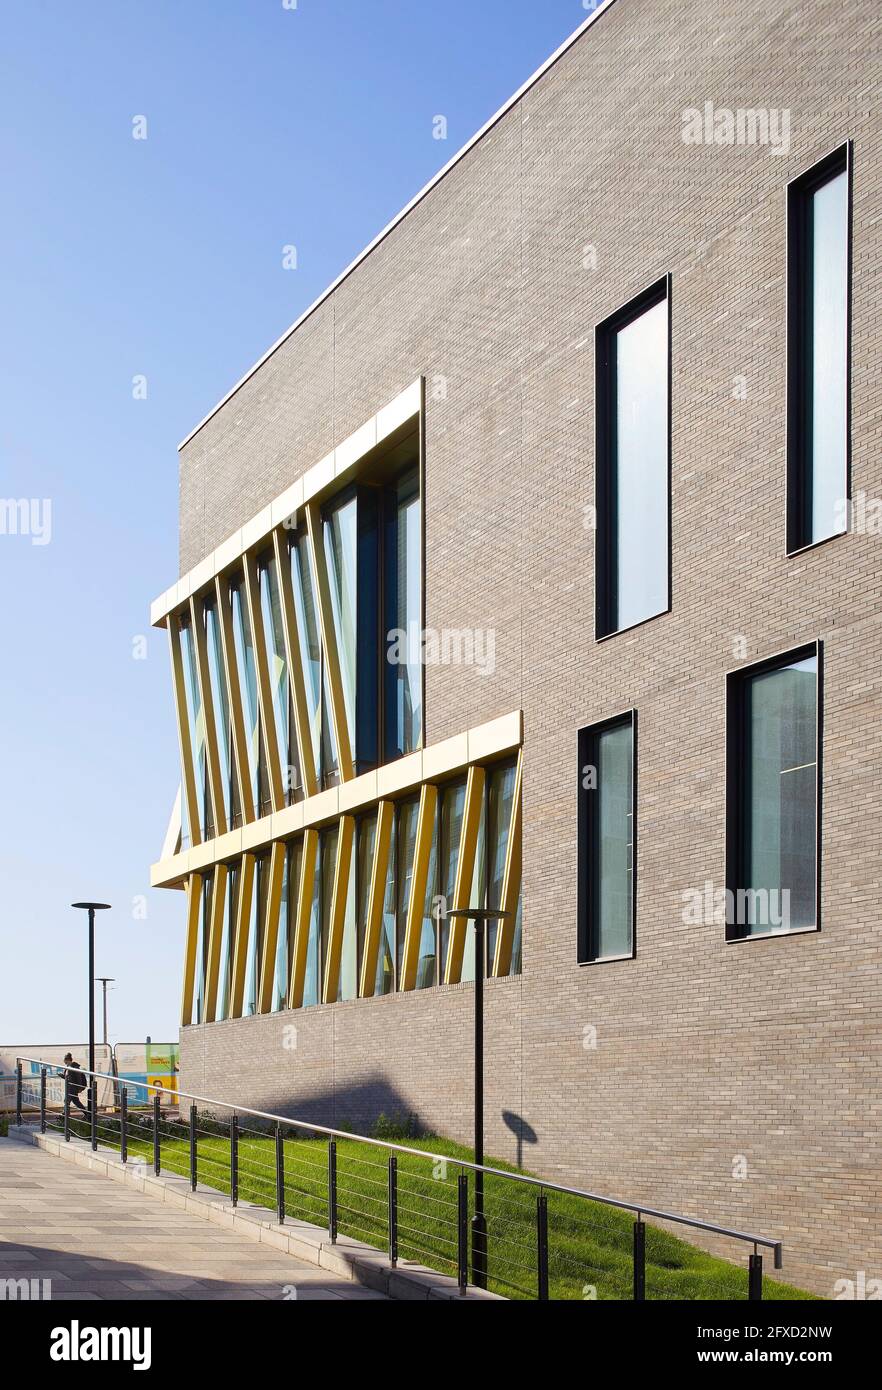 Blick auf Ziegelfassade und Landschaftsgestaltung. University of Birmingham, Collaborative Teaching Laboratory, Birmingham, Großbritannien. Architekt: Shepp Stockfoto